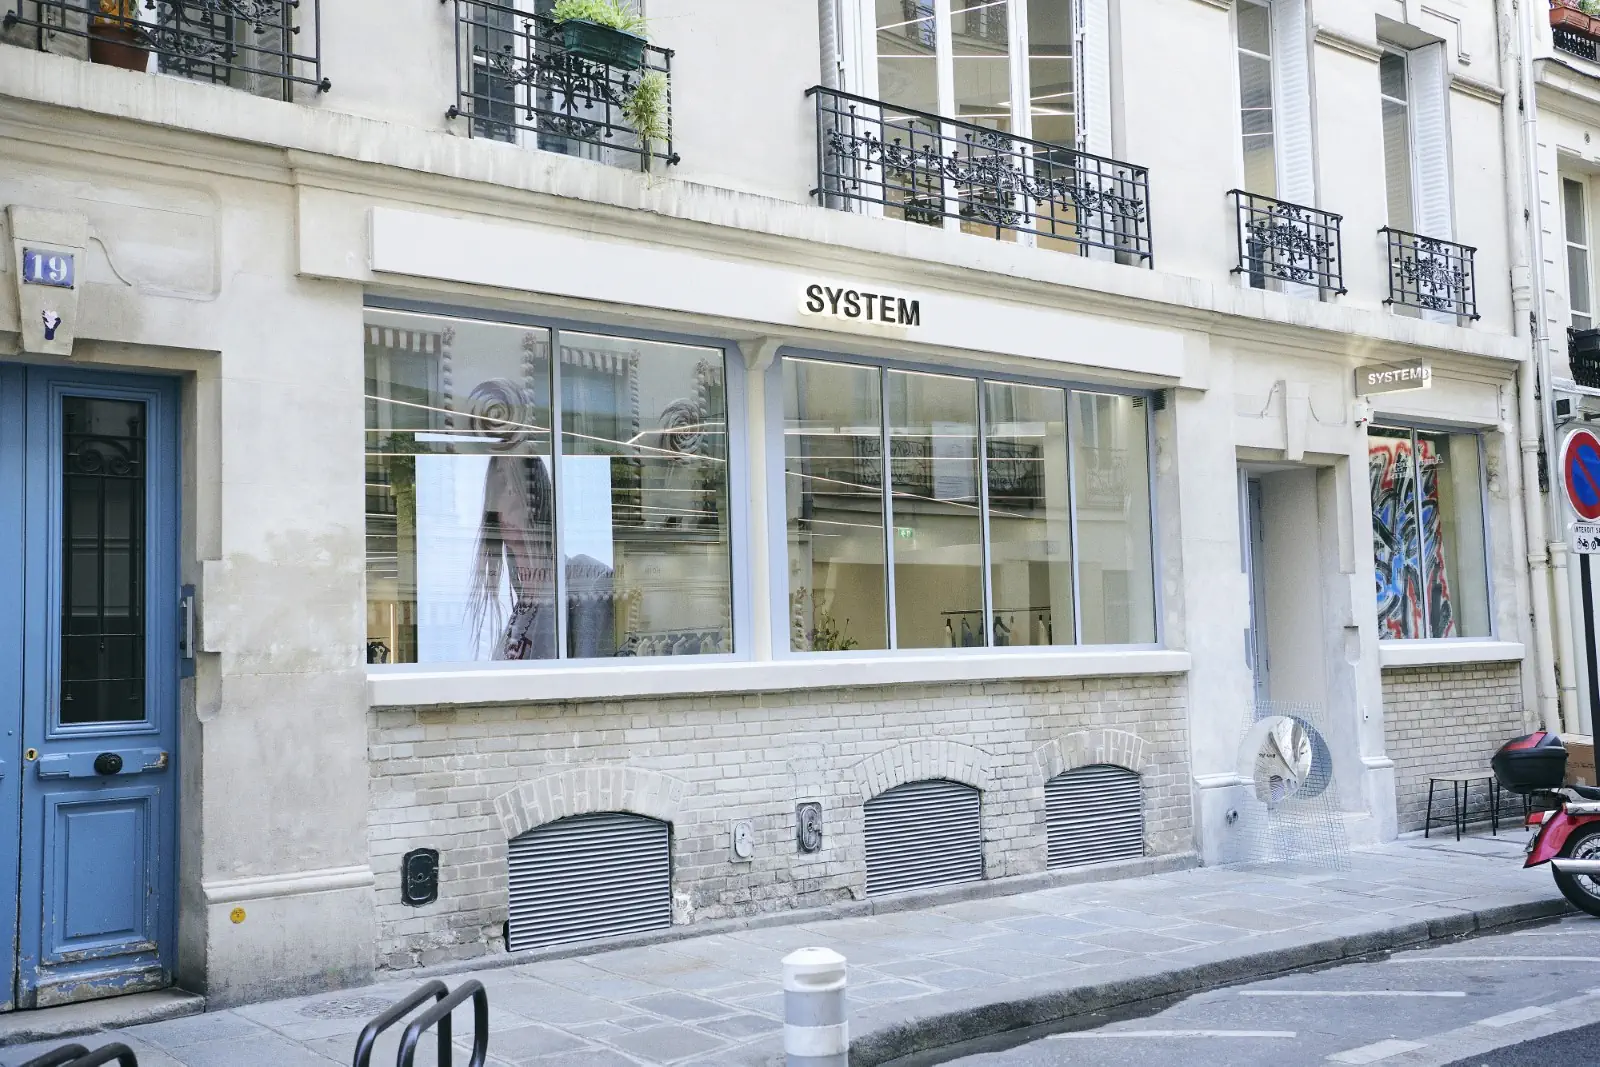 La marque de mode sud-coréenne SYSTEM ouvre son premier magasin parisien dans le Marais